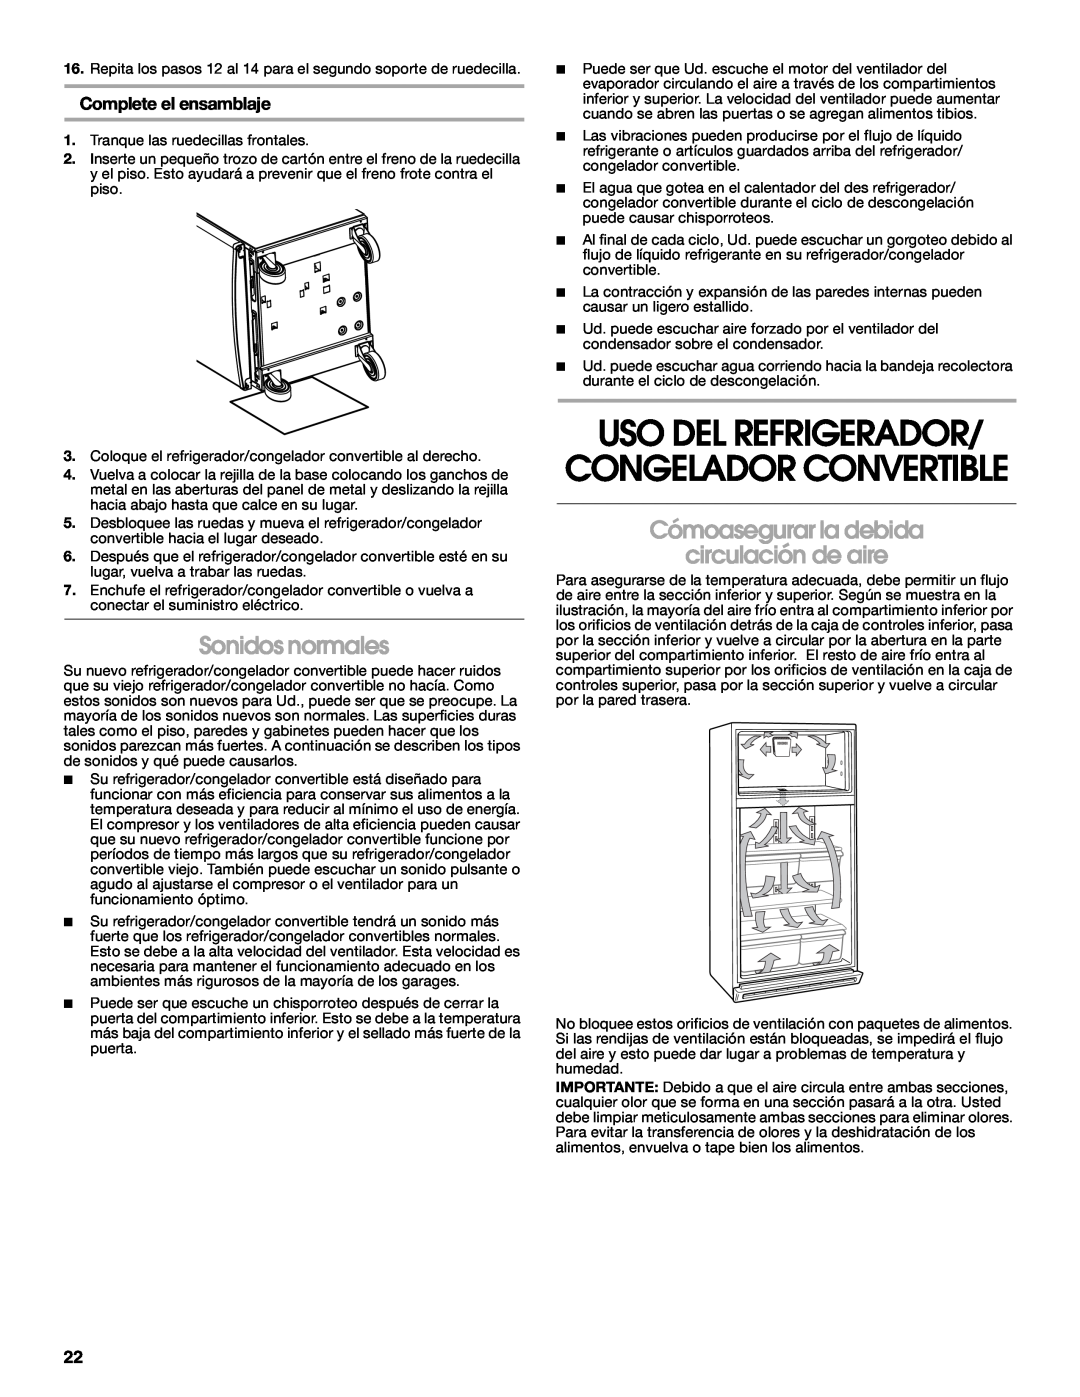 Whirlpool GAFZ21XXMK00 manual Uso Del Refrigerador/ Congelador Convertible, Sonidos normales, Complete el ensamblaje 